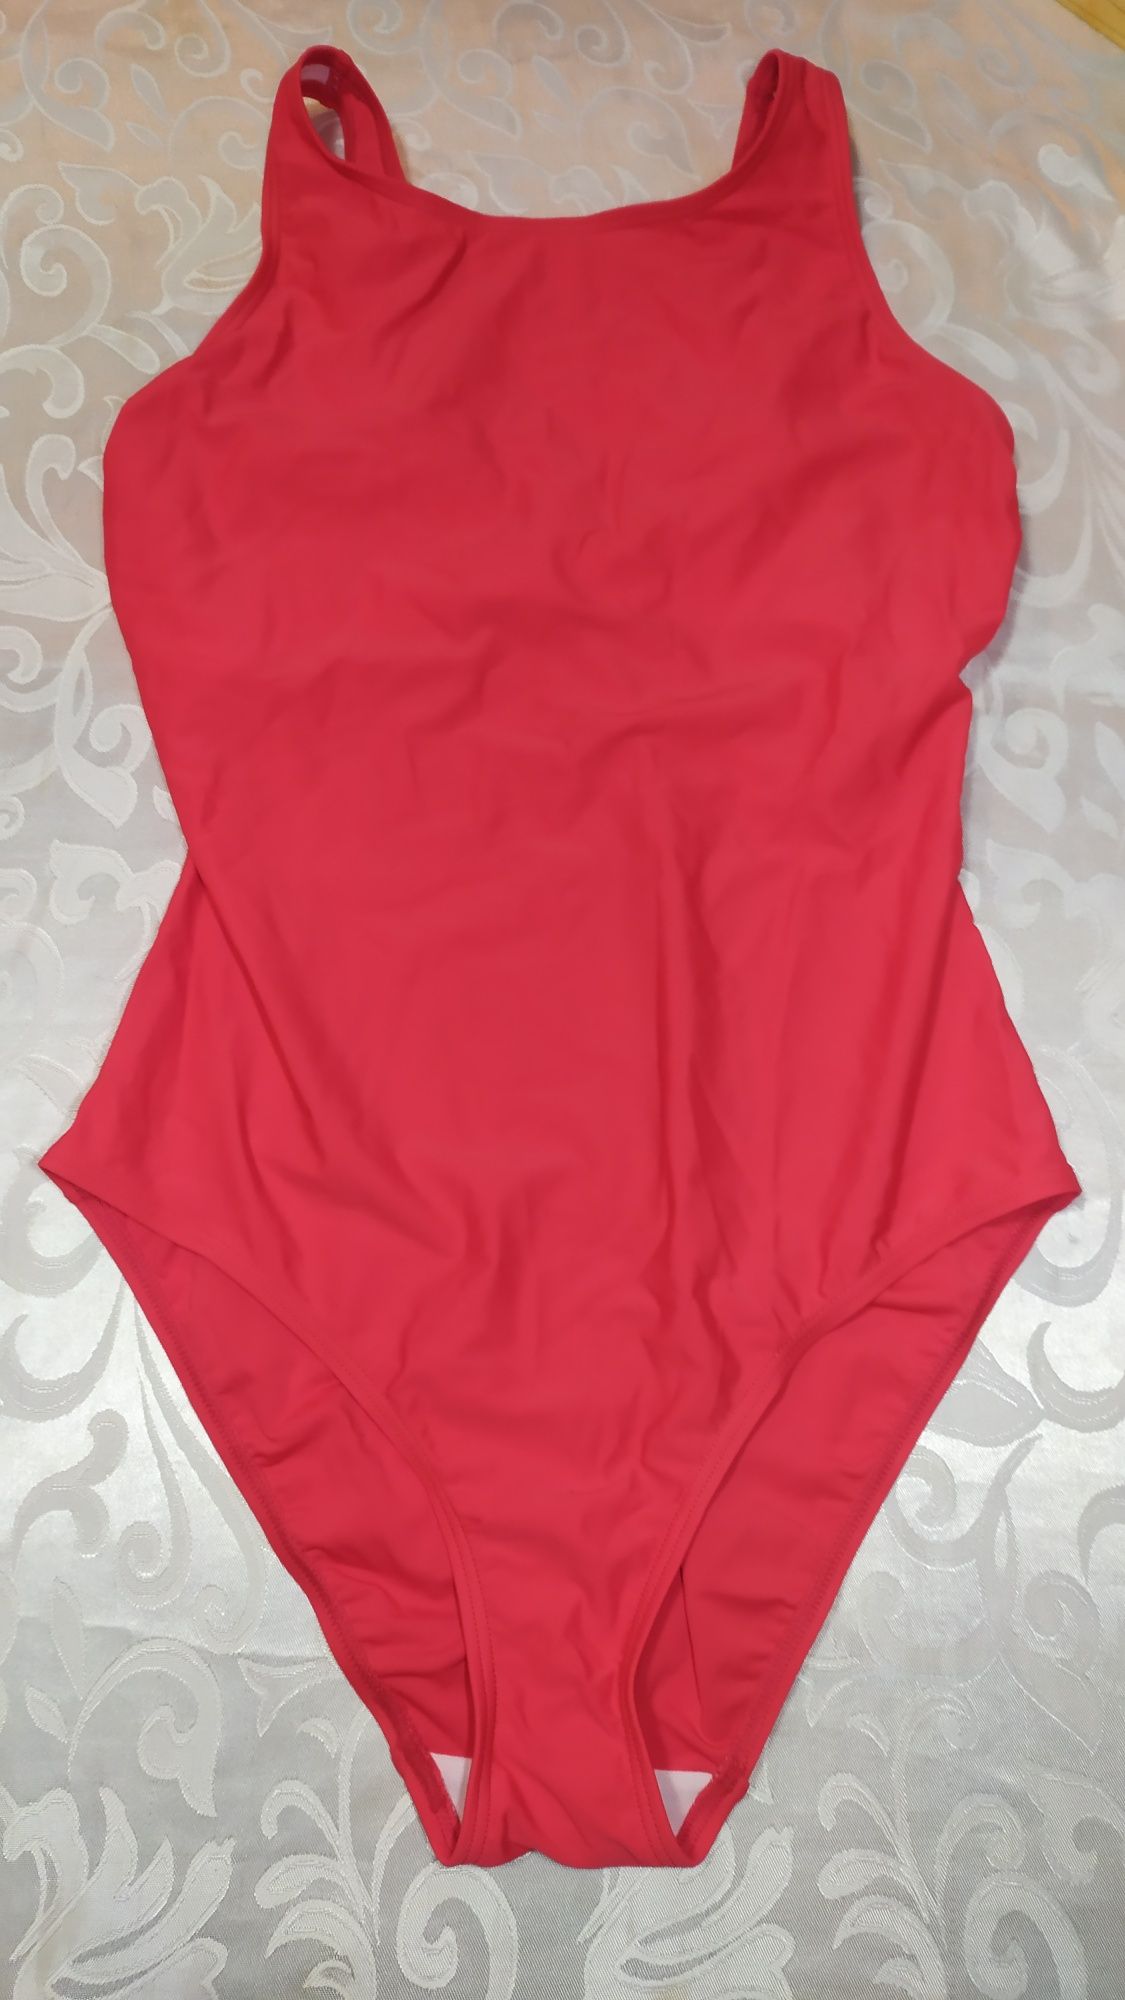 NOWY jednoczęściowy strój kąpielowy r. 42 - czerwony  BONPRIX